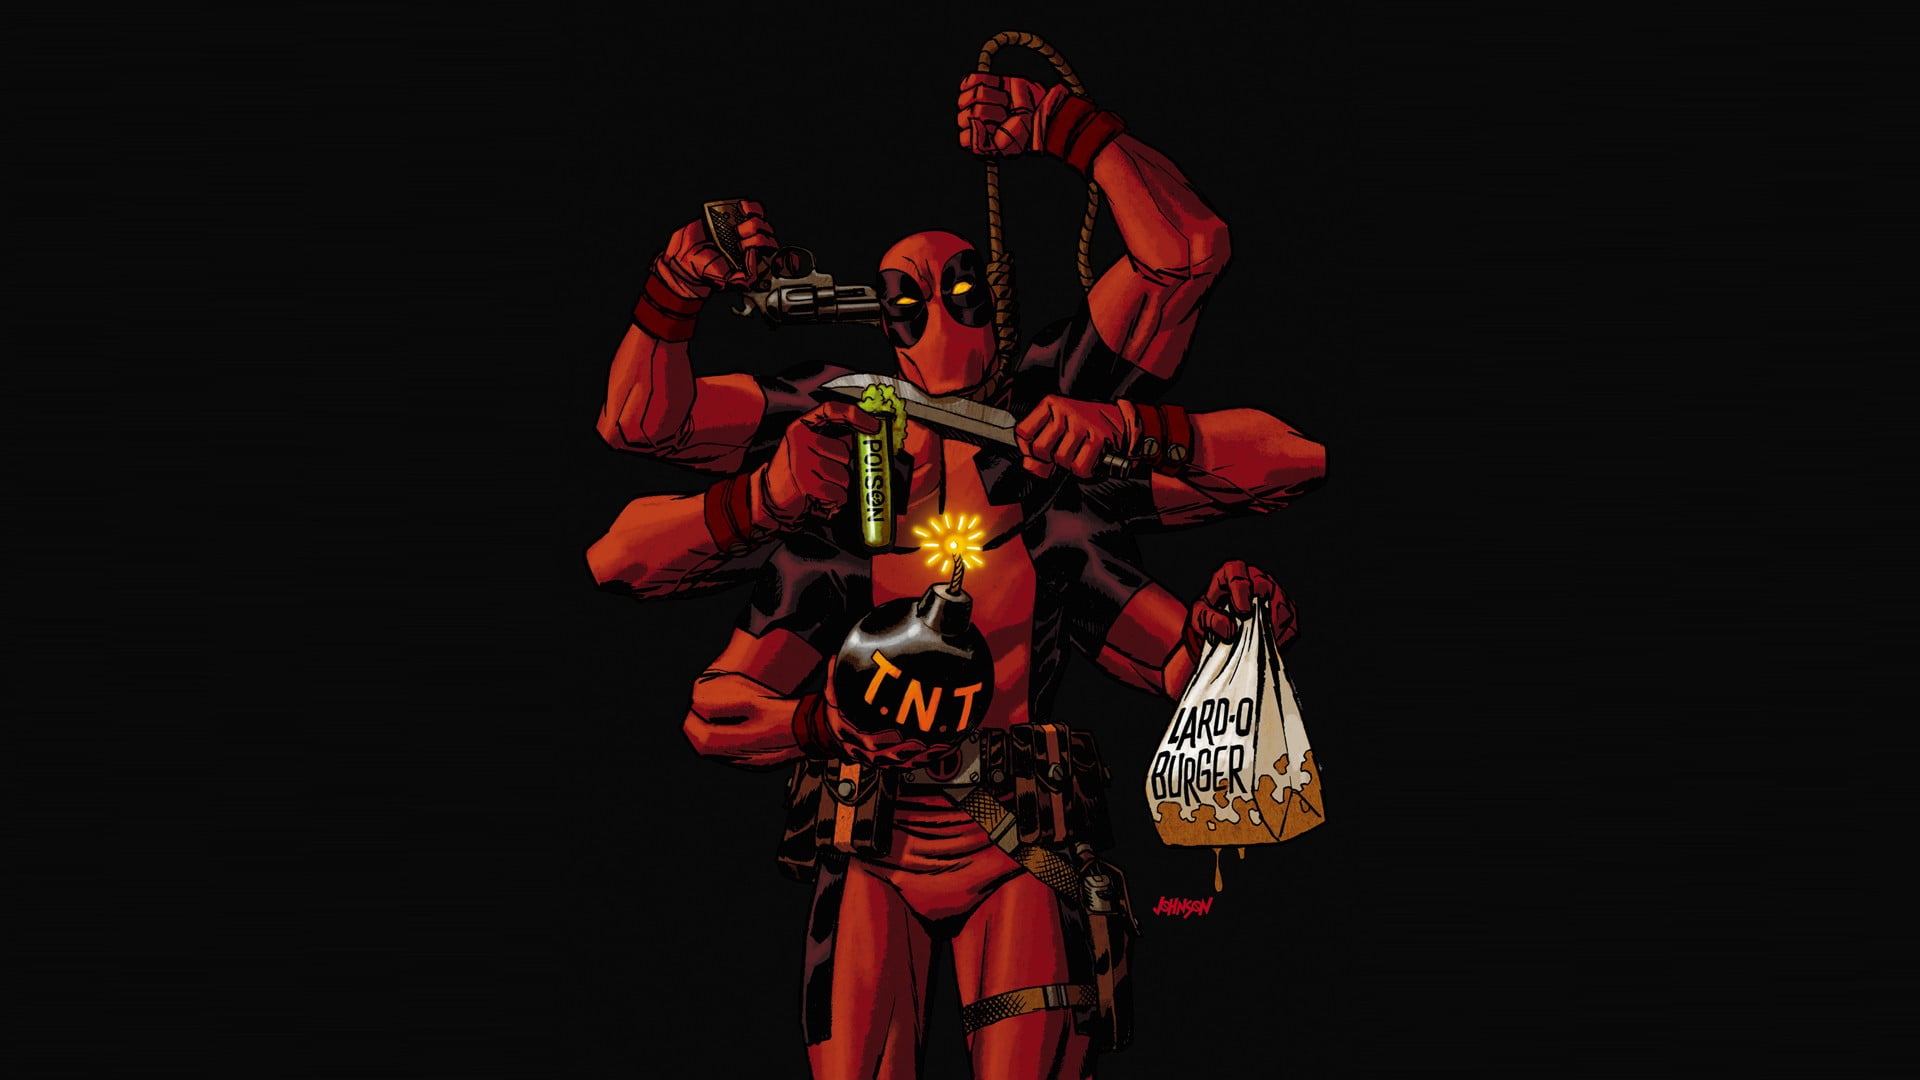 Marvel Deadpool wallpaper, comic art, studio shot, black background